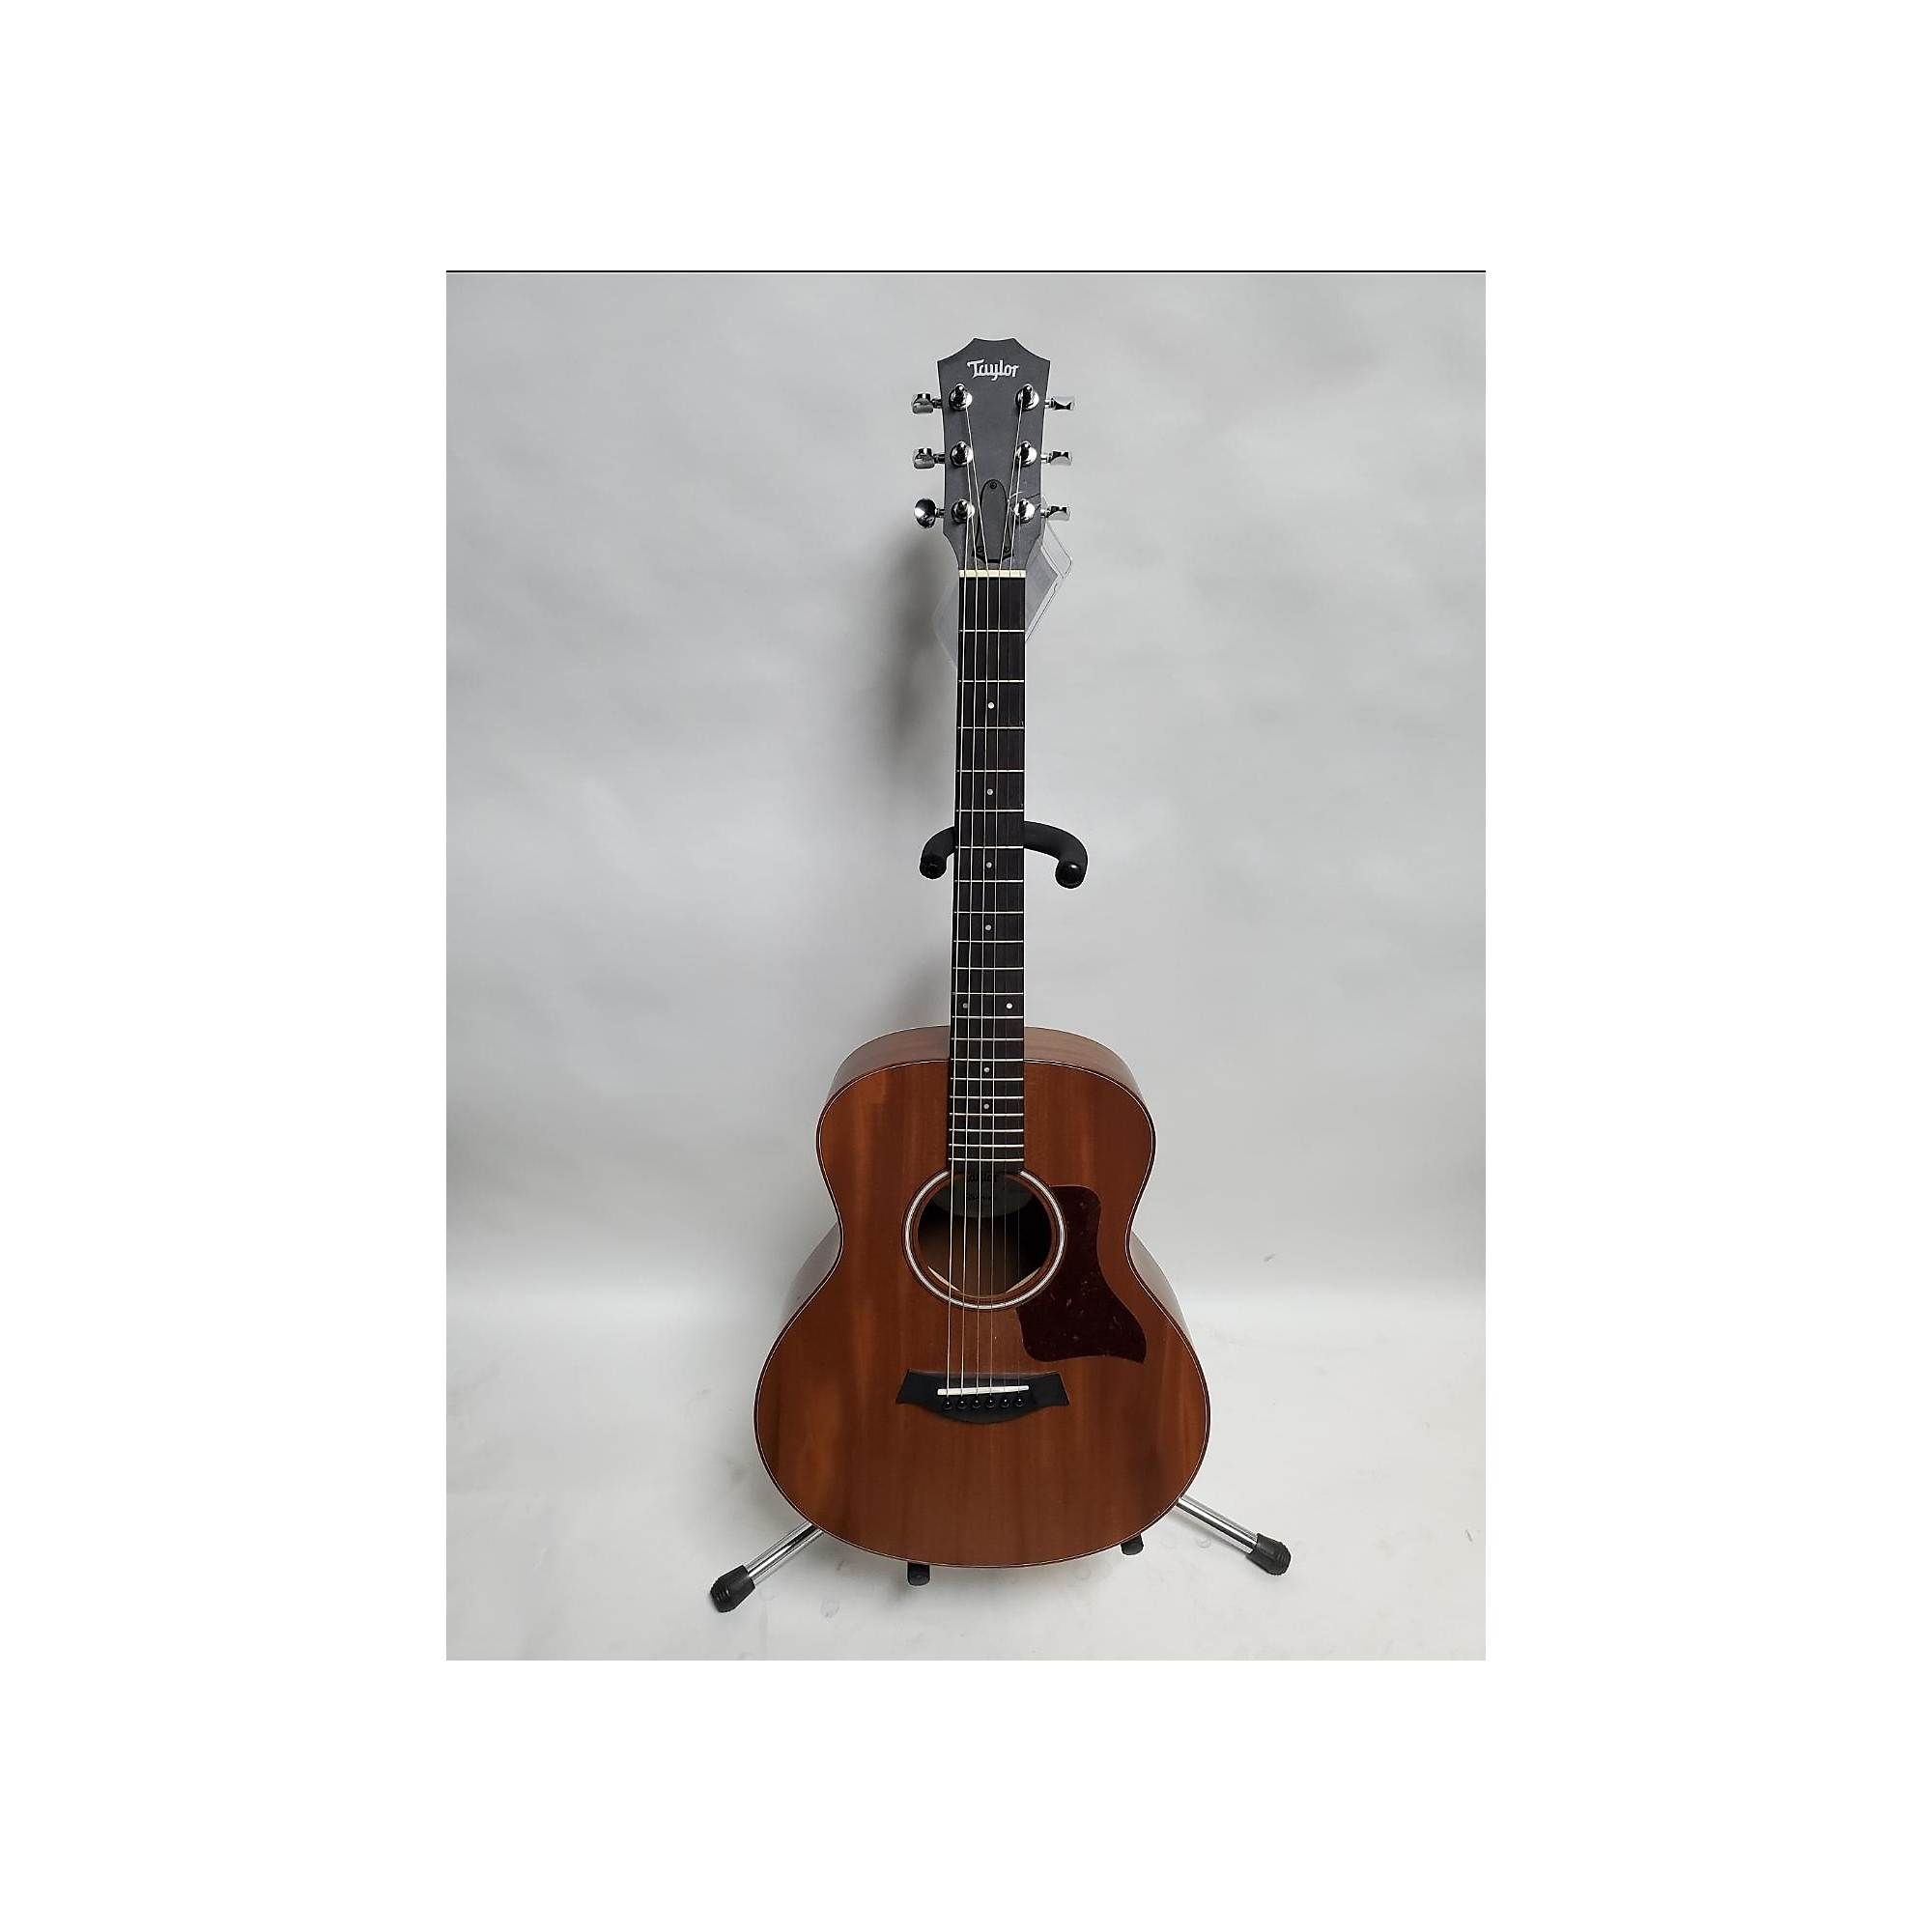 公式通販オンライン 36寸民謡木ギター アコースティックギター